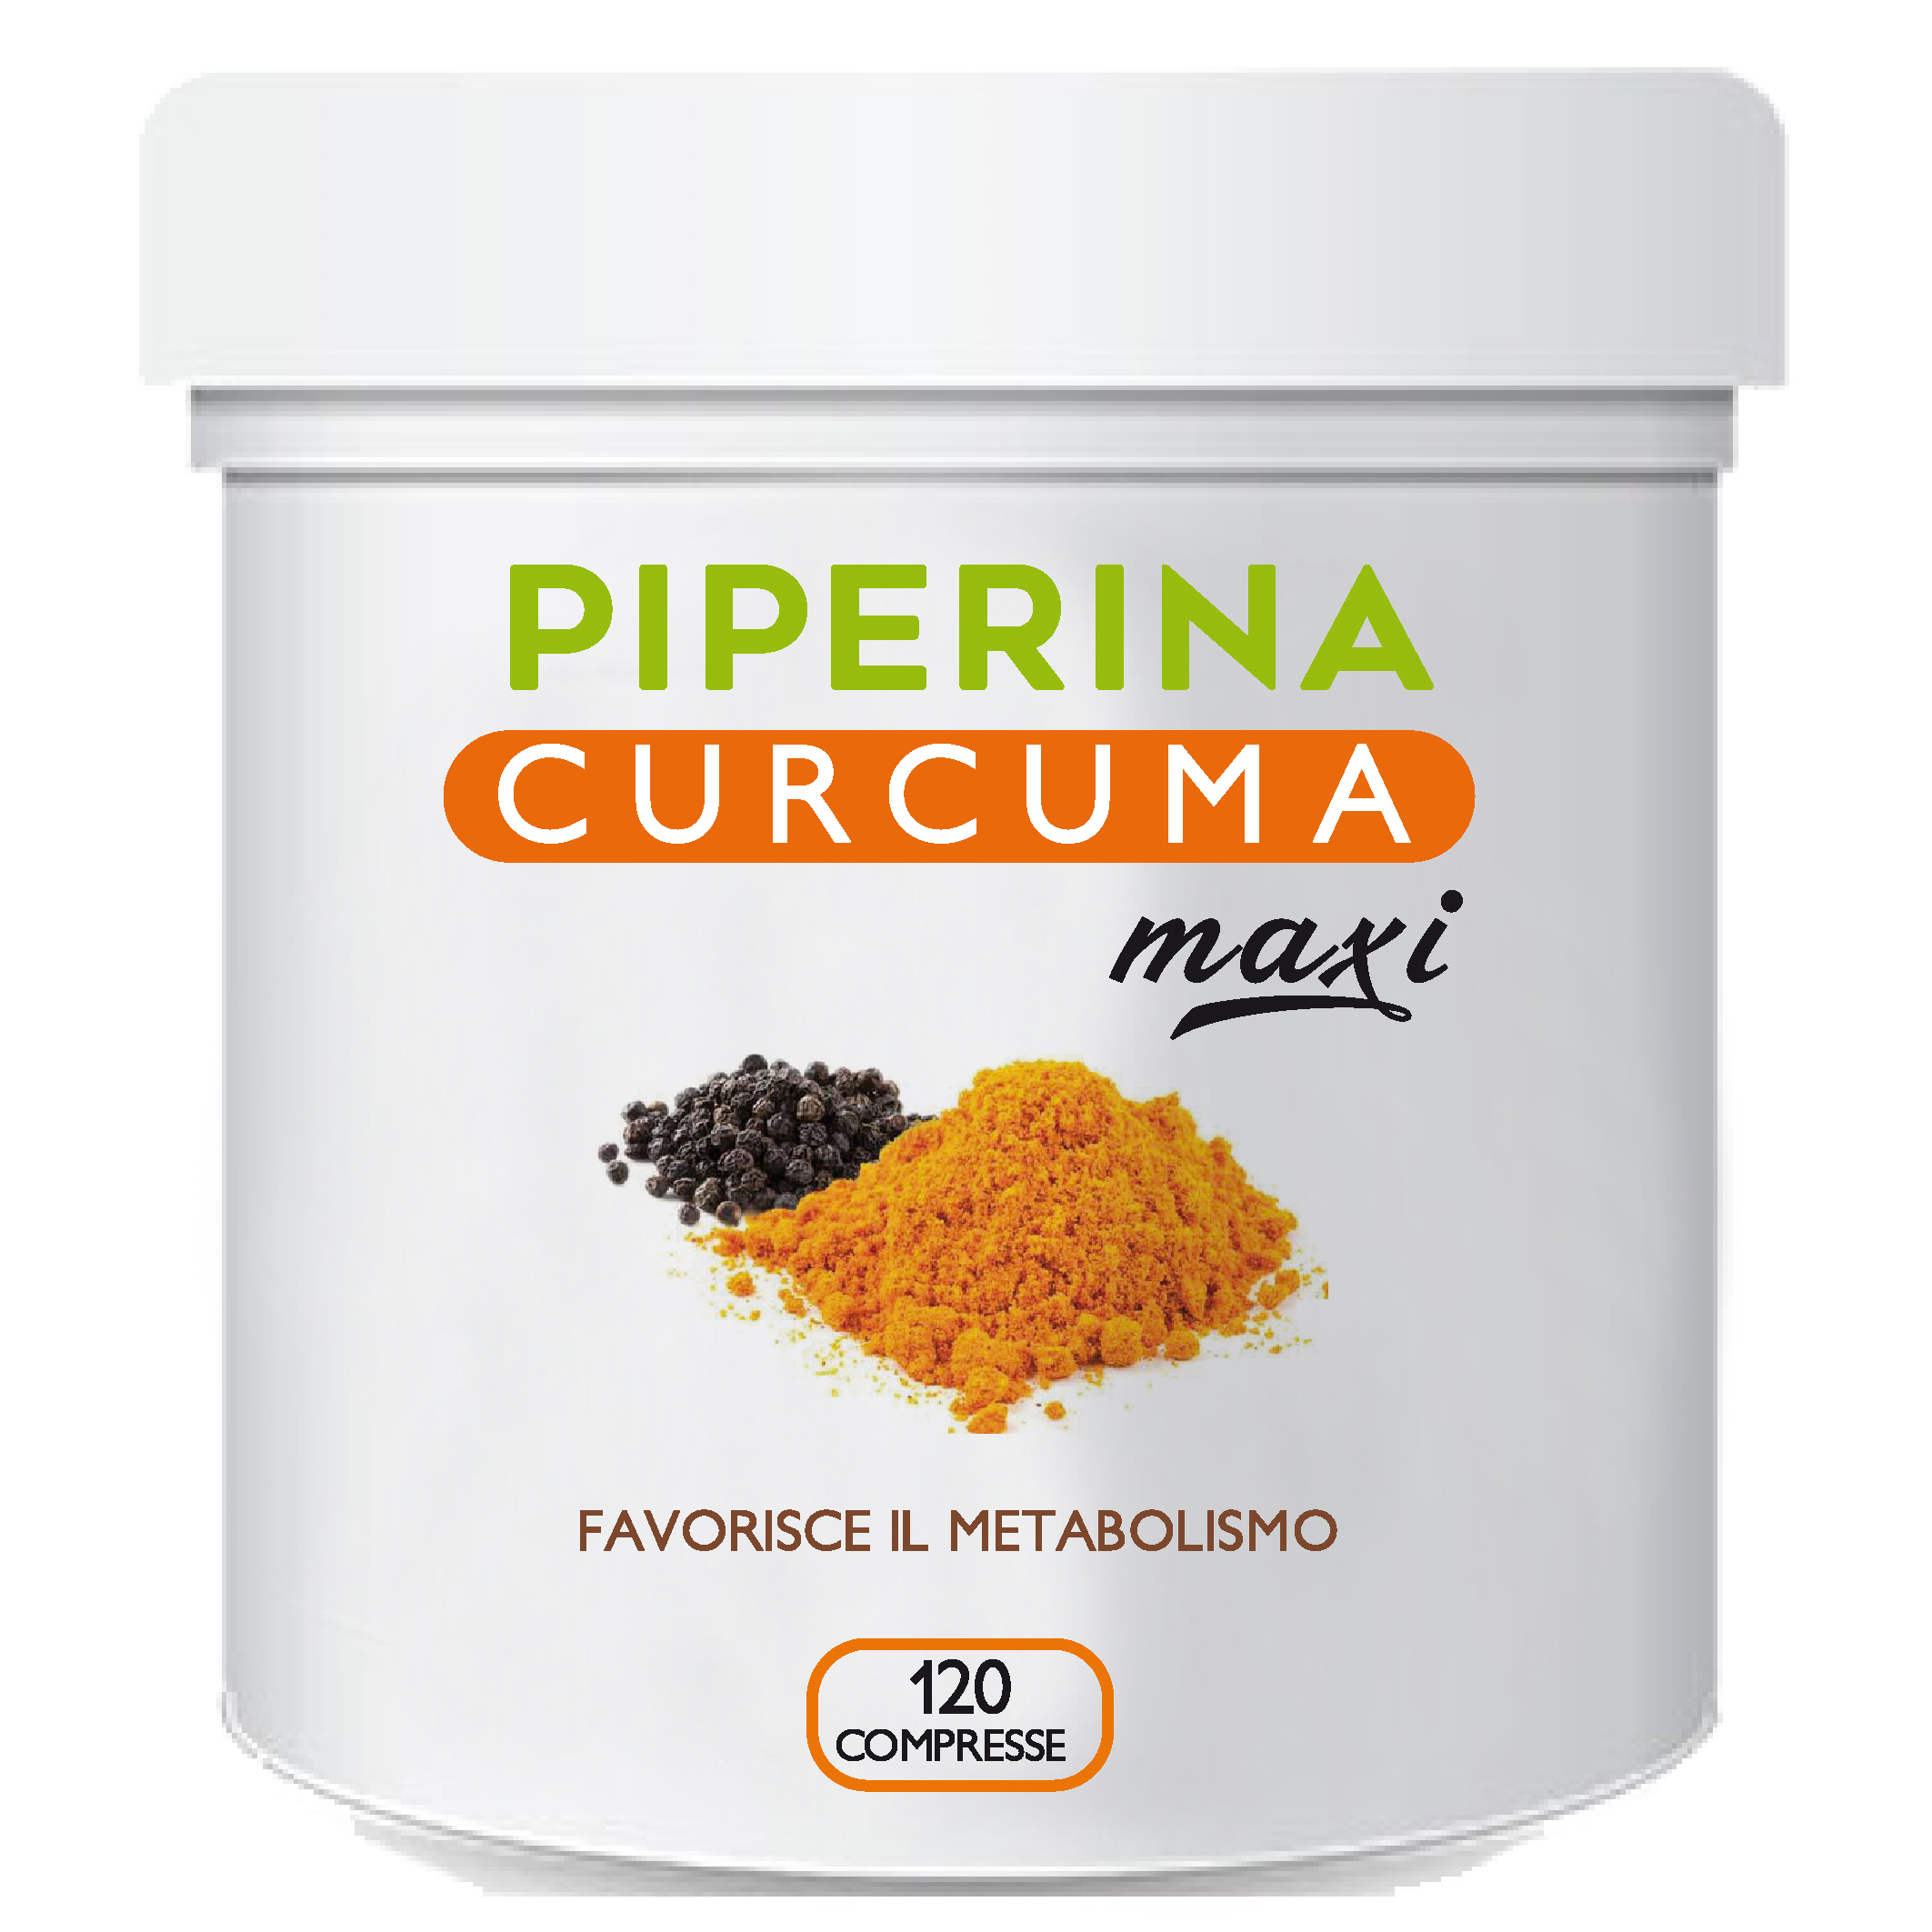 Piperina Curcuma Maxi l'integratore per la perdita di peso più venduto in Italia